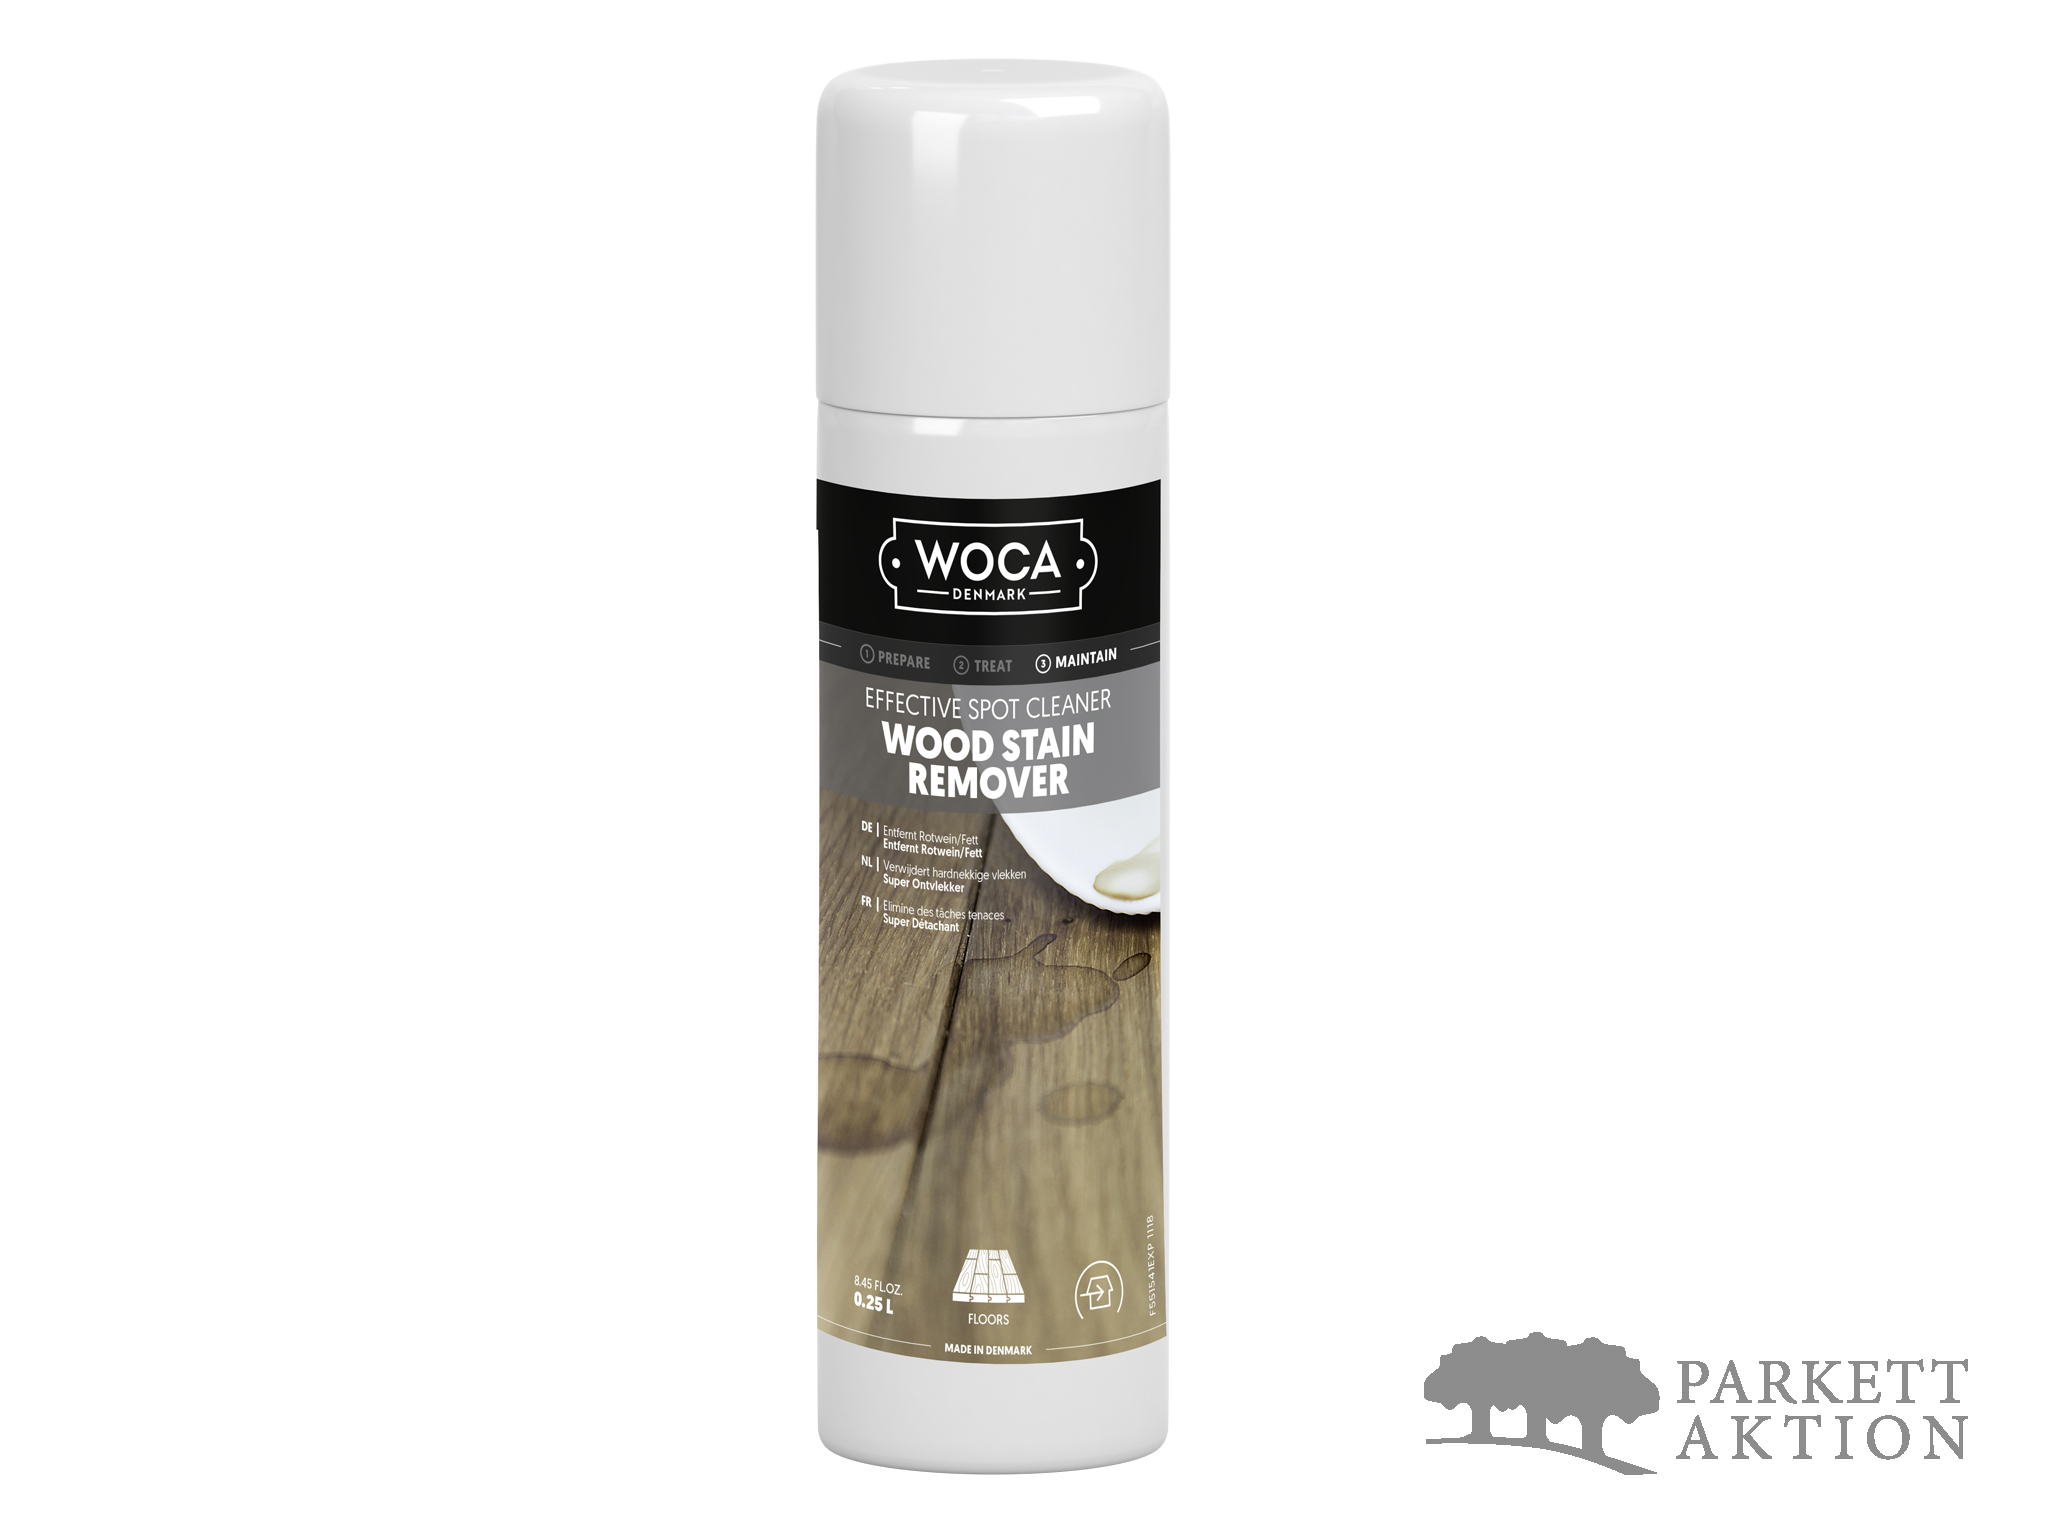 Woca Fleckenentferner Spray Wood Stain Remover De Parkett